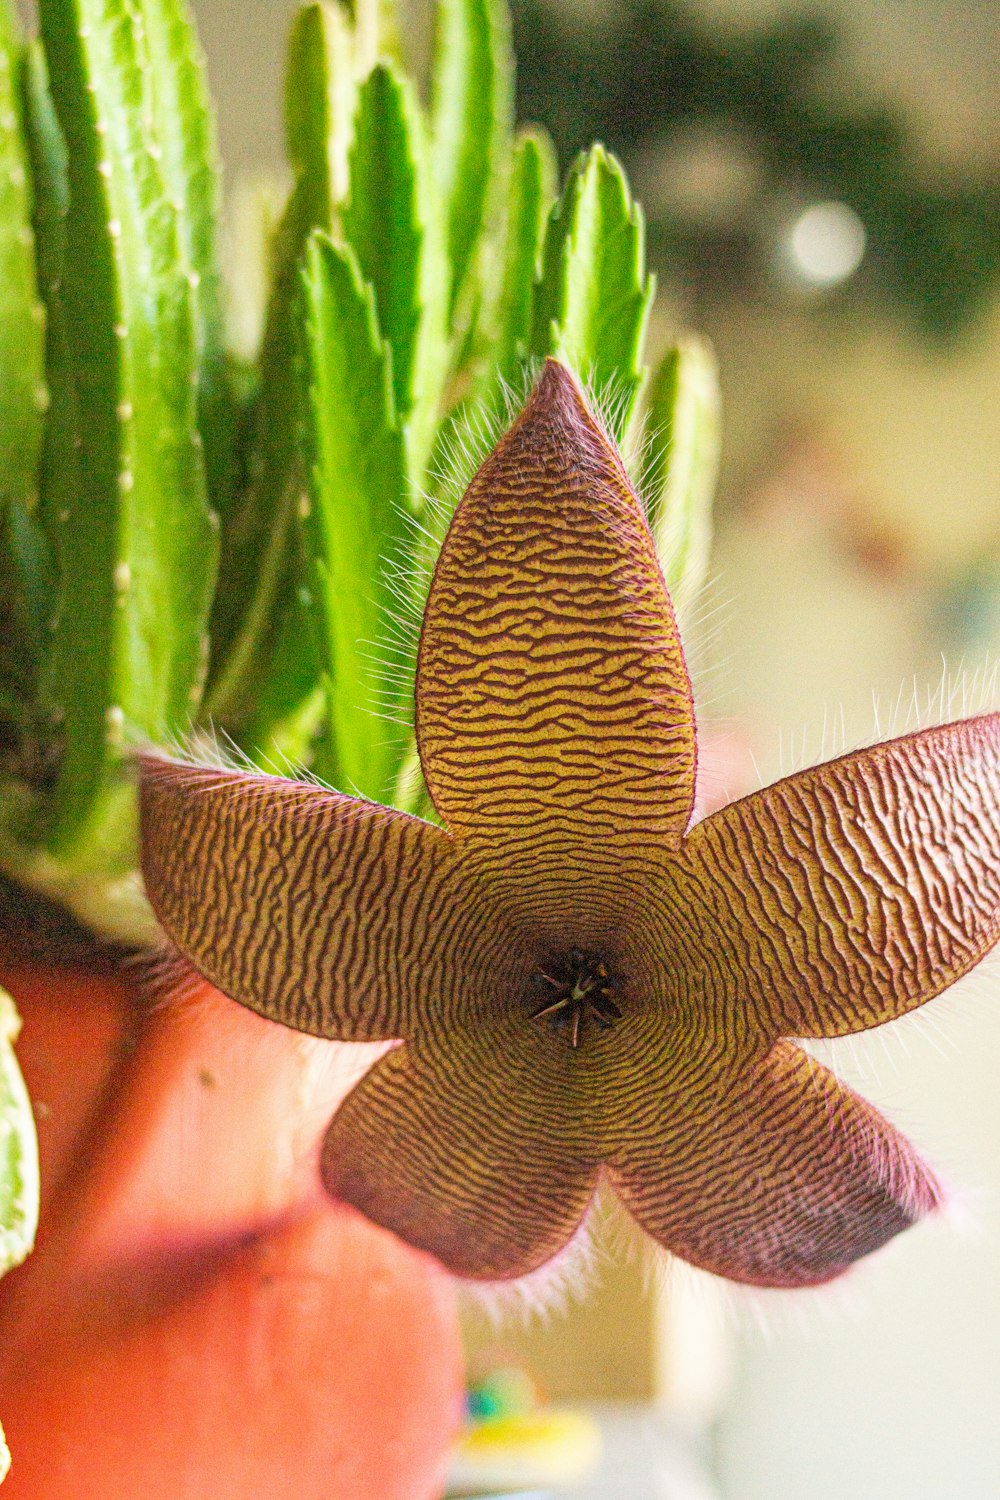 Un primo piano di un fiore su una pianta foto – Fiore di stella marina  Immagine gratuita su Unsplash